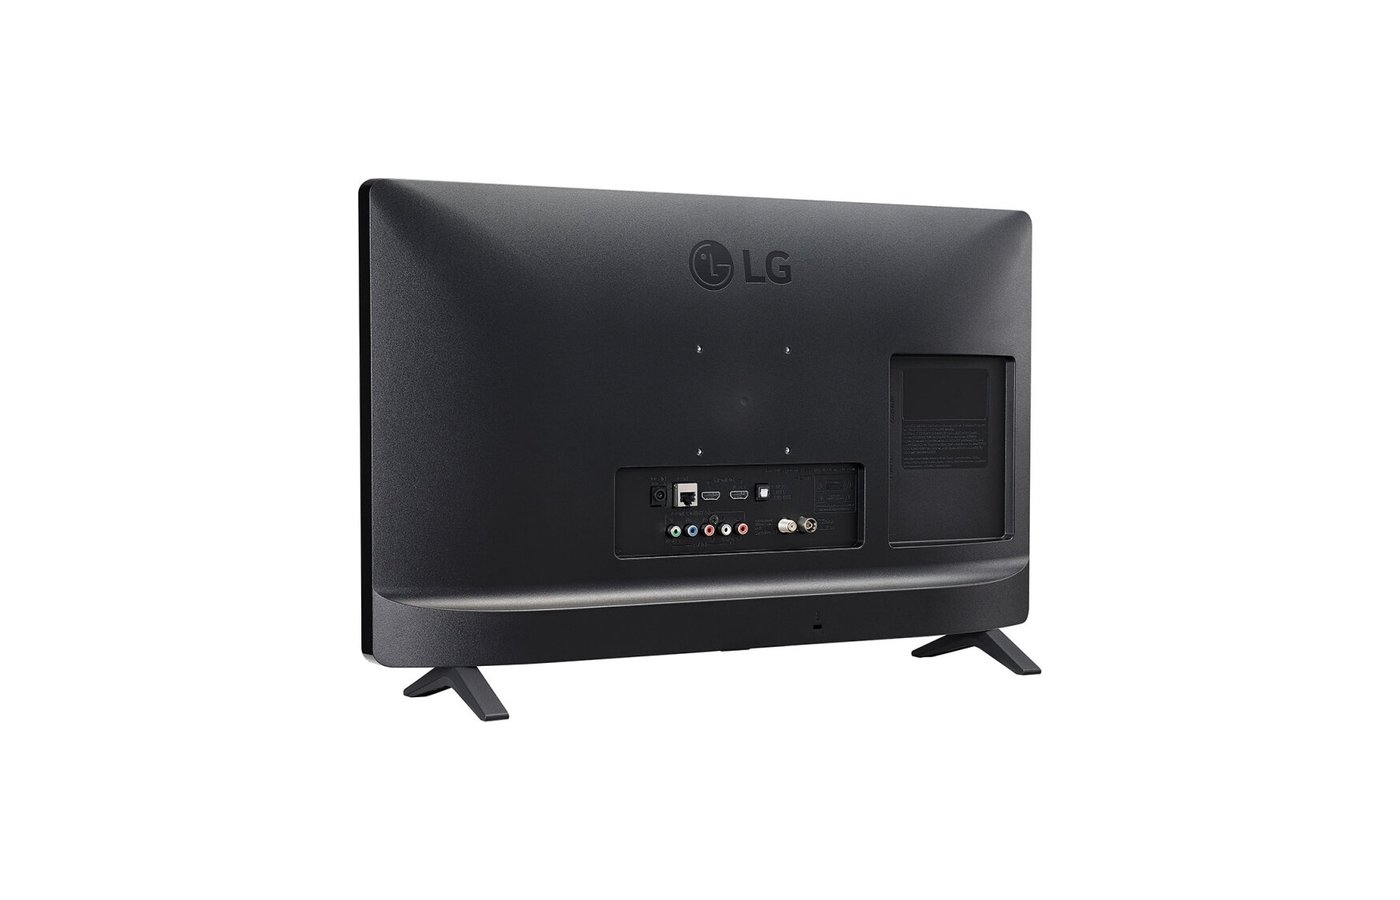 LG 24tn520s-PZ. Телевизор 24" LG 24tn520s-PZ. LG 24tn520s-PZ Smart TV. LG 28tq525s-PZ. Телевизор lg 24tq520s